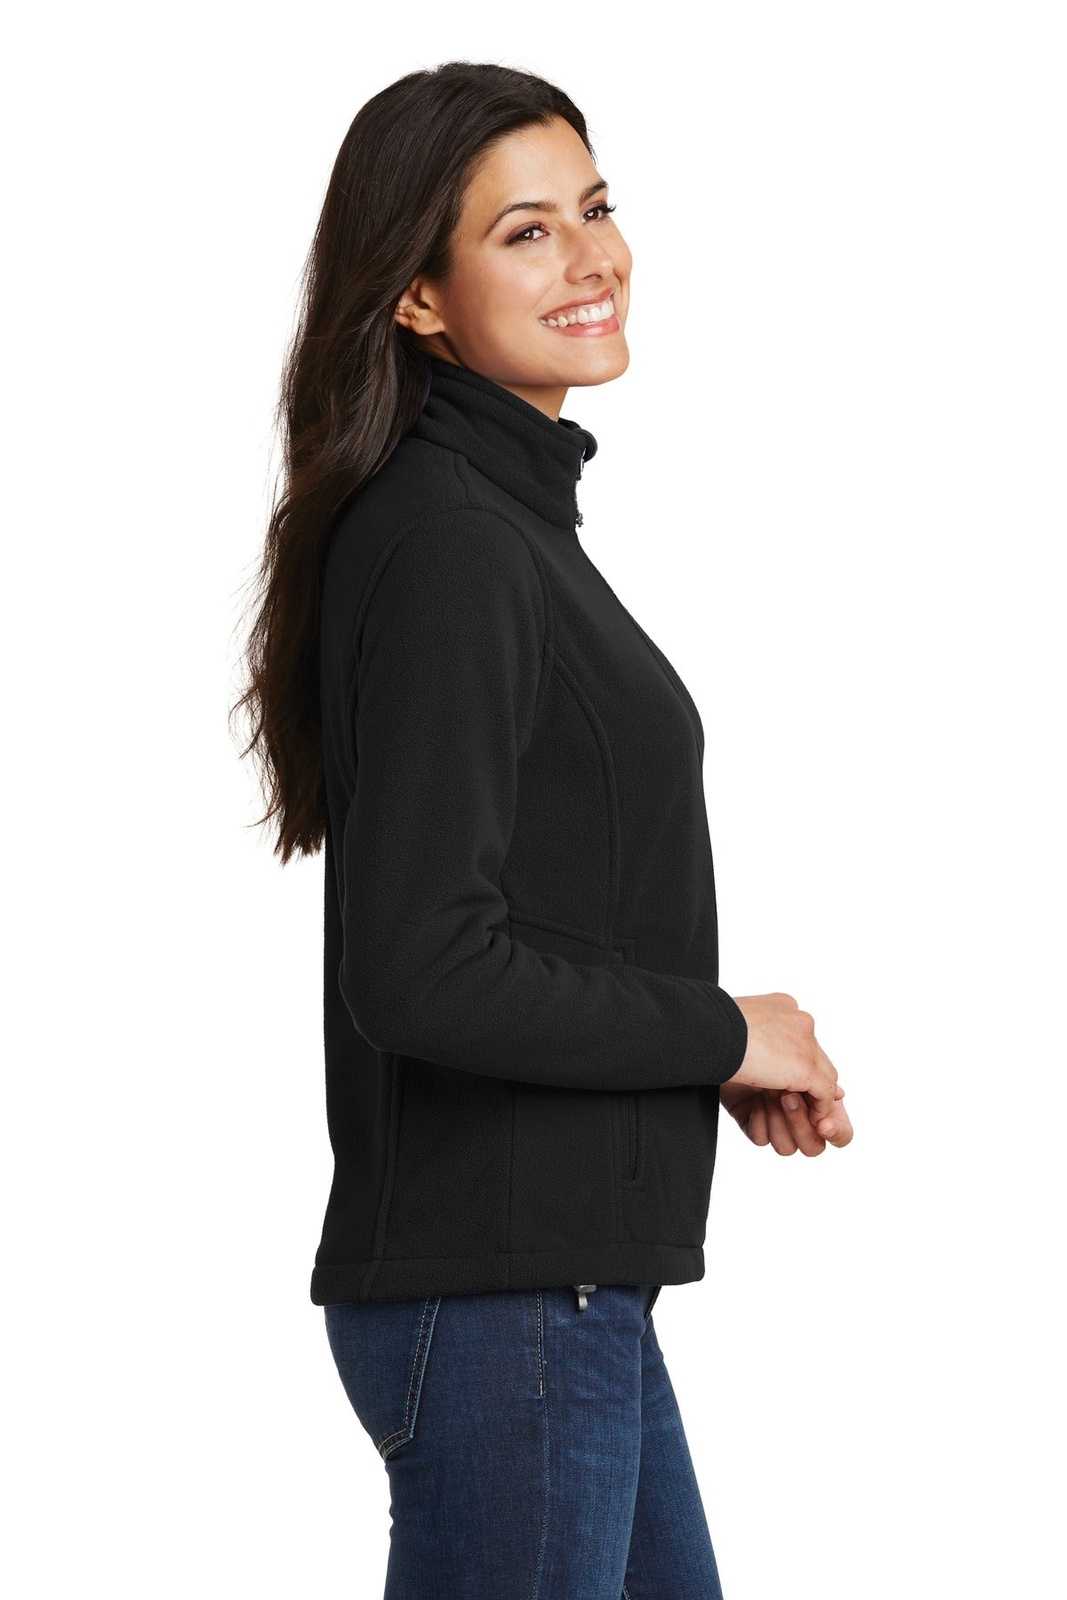 Port Authority L217 Ladies Value Fleece Jacket - Black - HIT a Double - 3